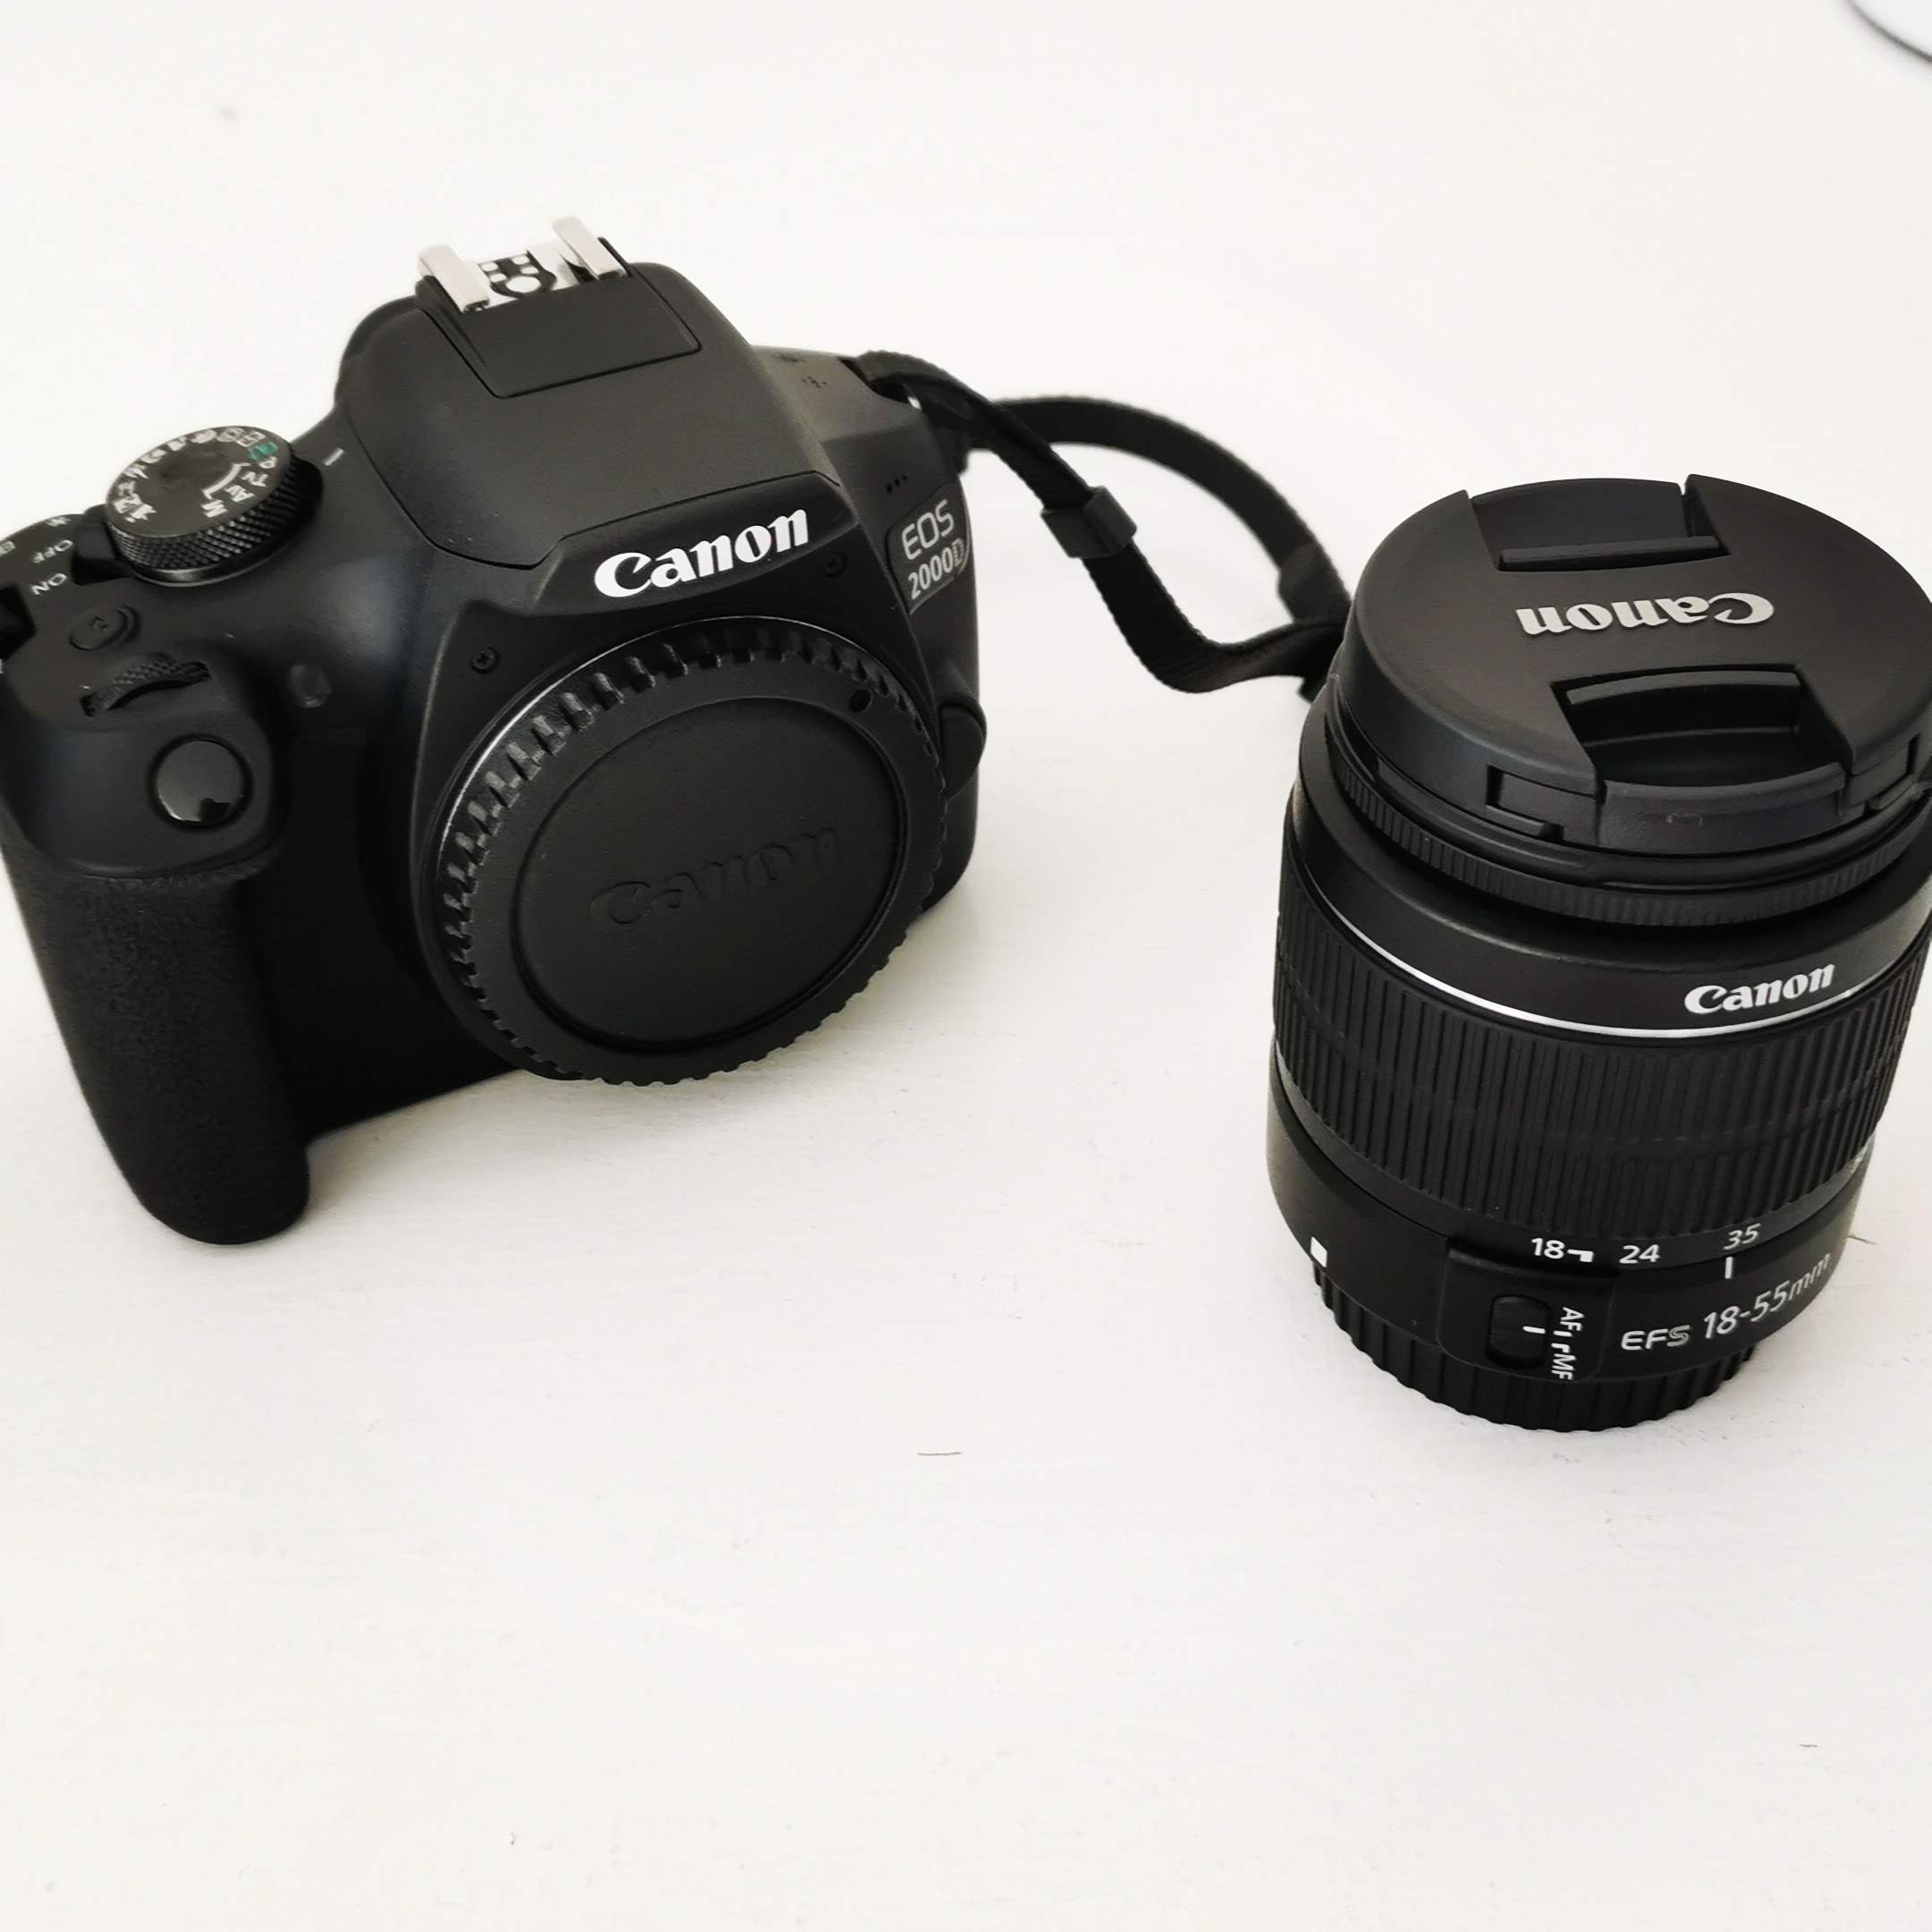 De Canon 2000D is mijn eerste spiegelreflex camera.